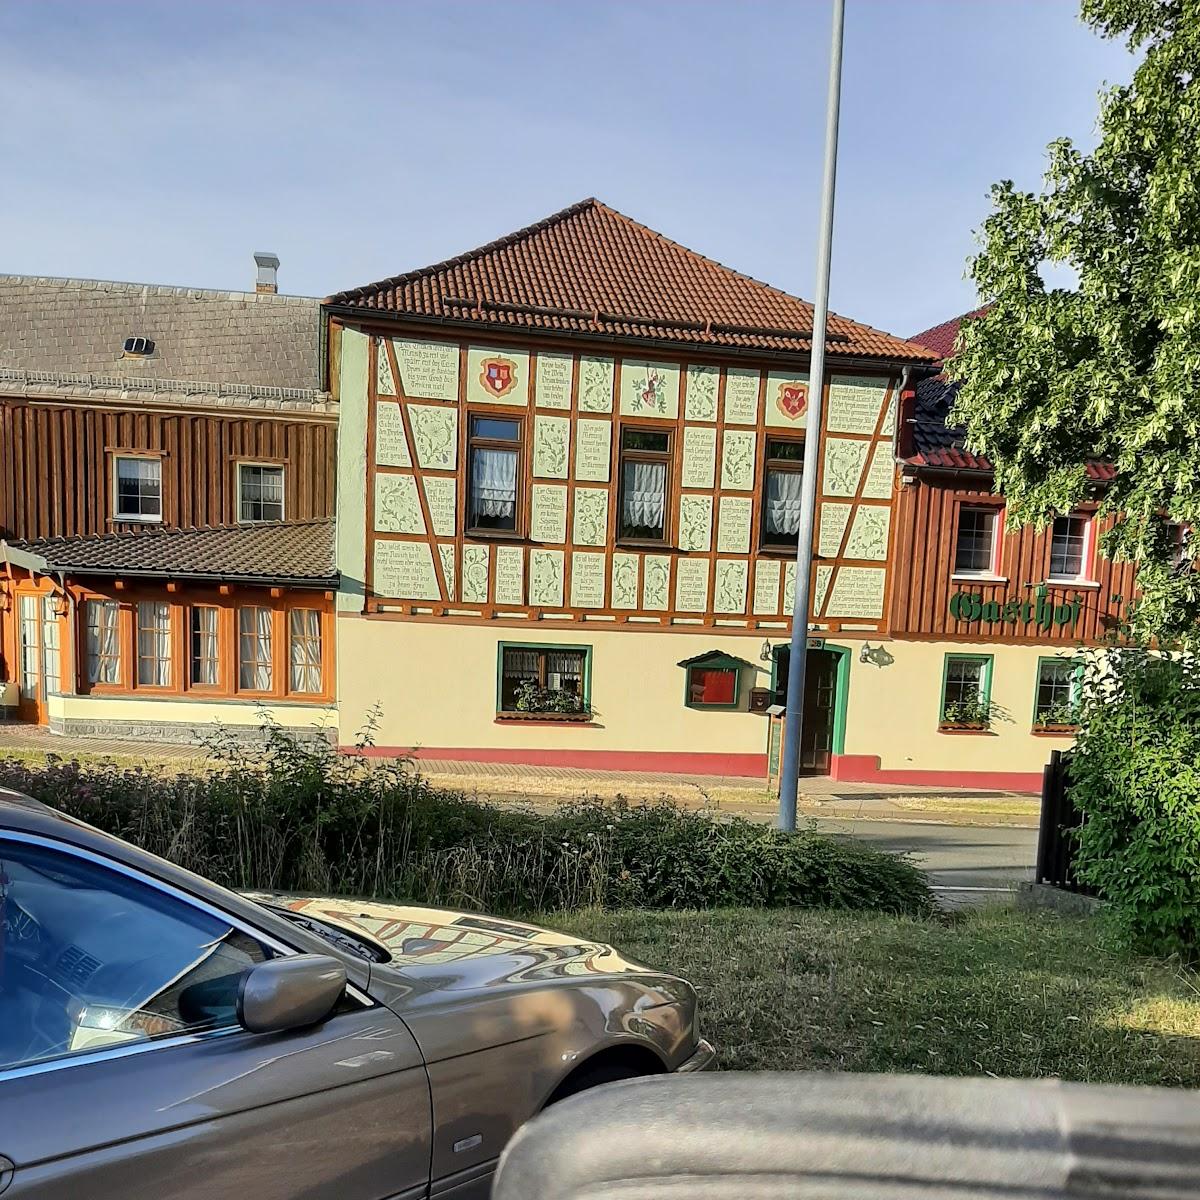 Restaurant "Gasthof & Hotel Zur Linde" in Auma-Weidatal